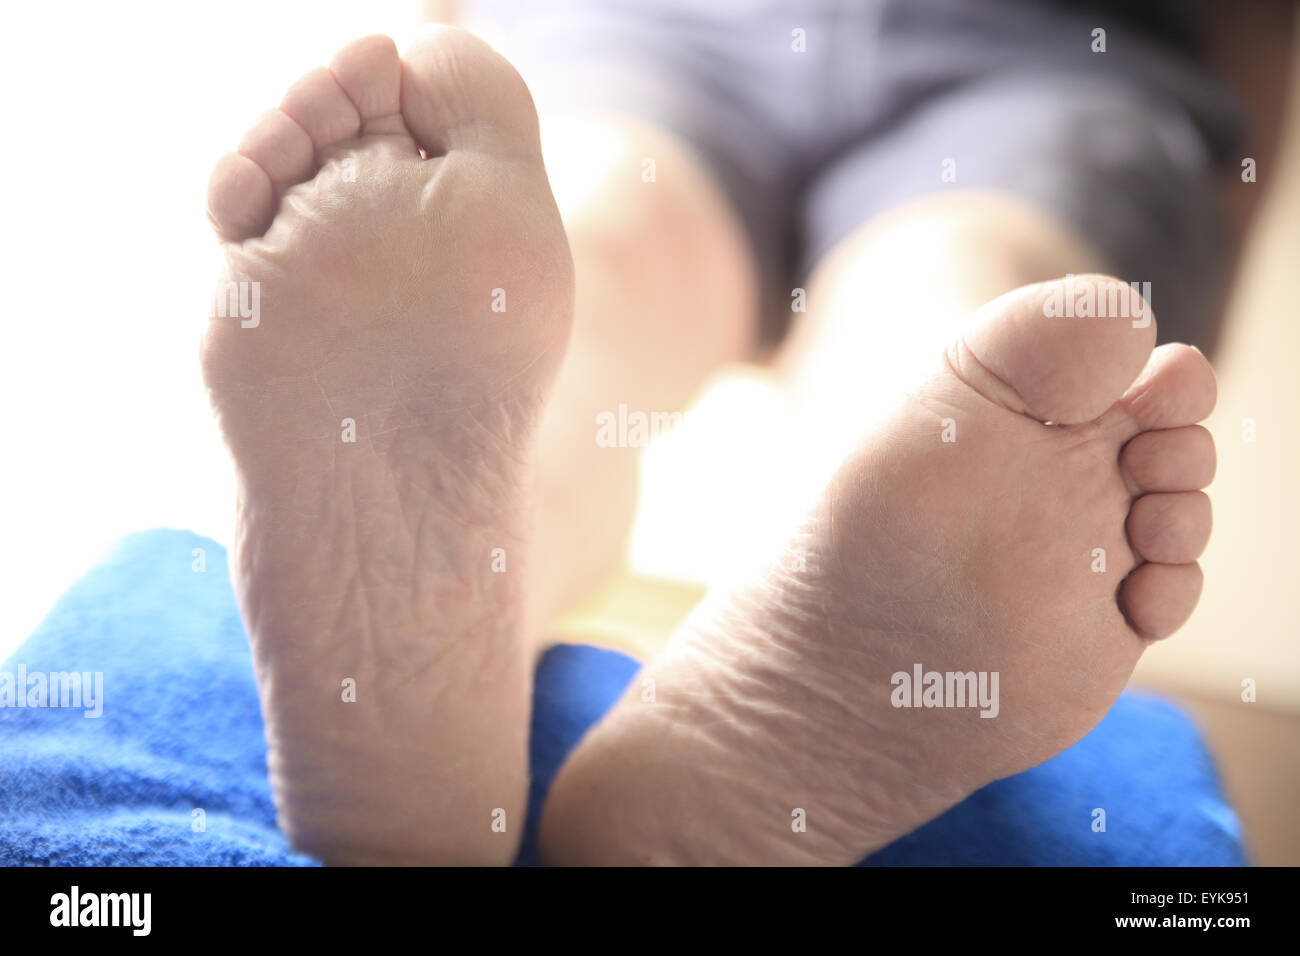 Detailansicht der beiden Füße eines Mannes mit seinen Beinen aufgestützt Stockfoto